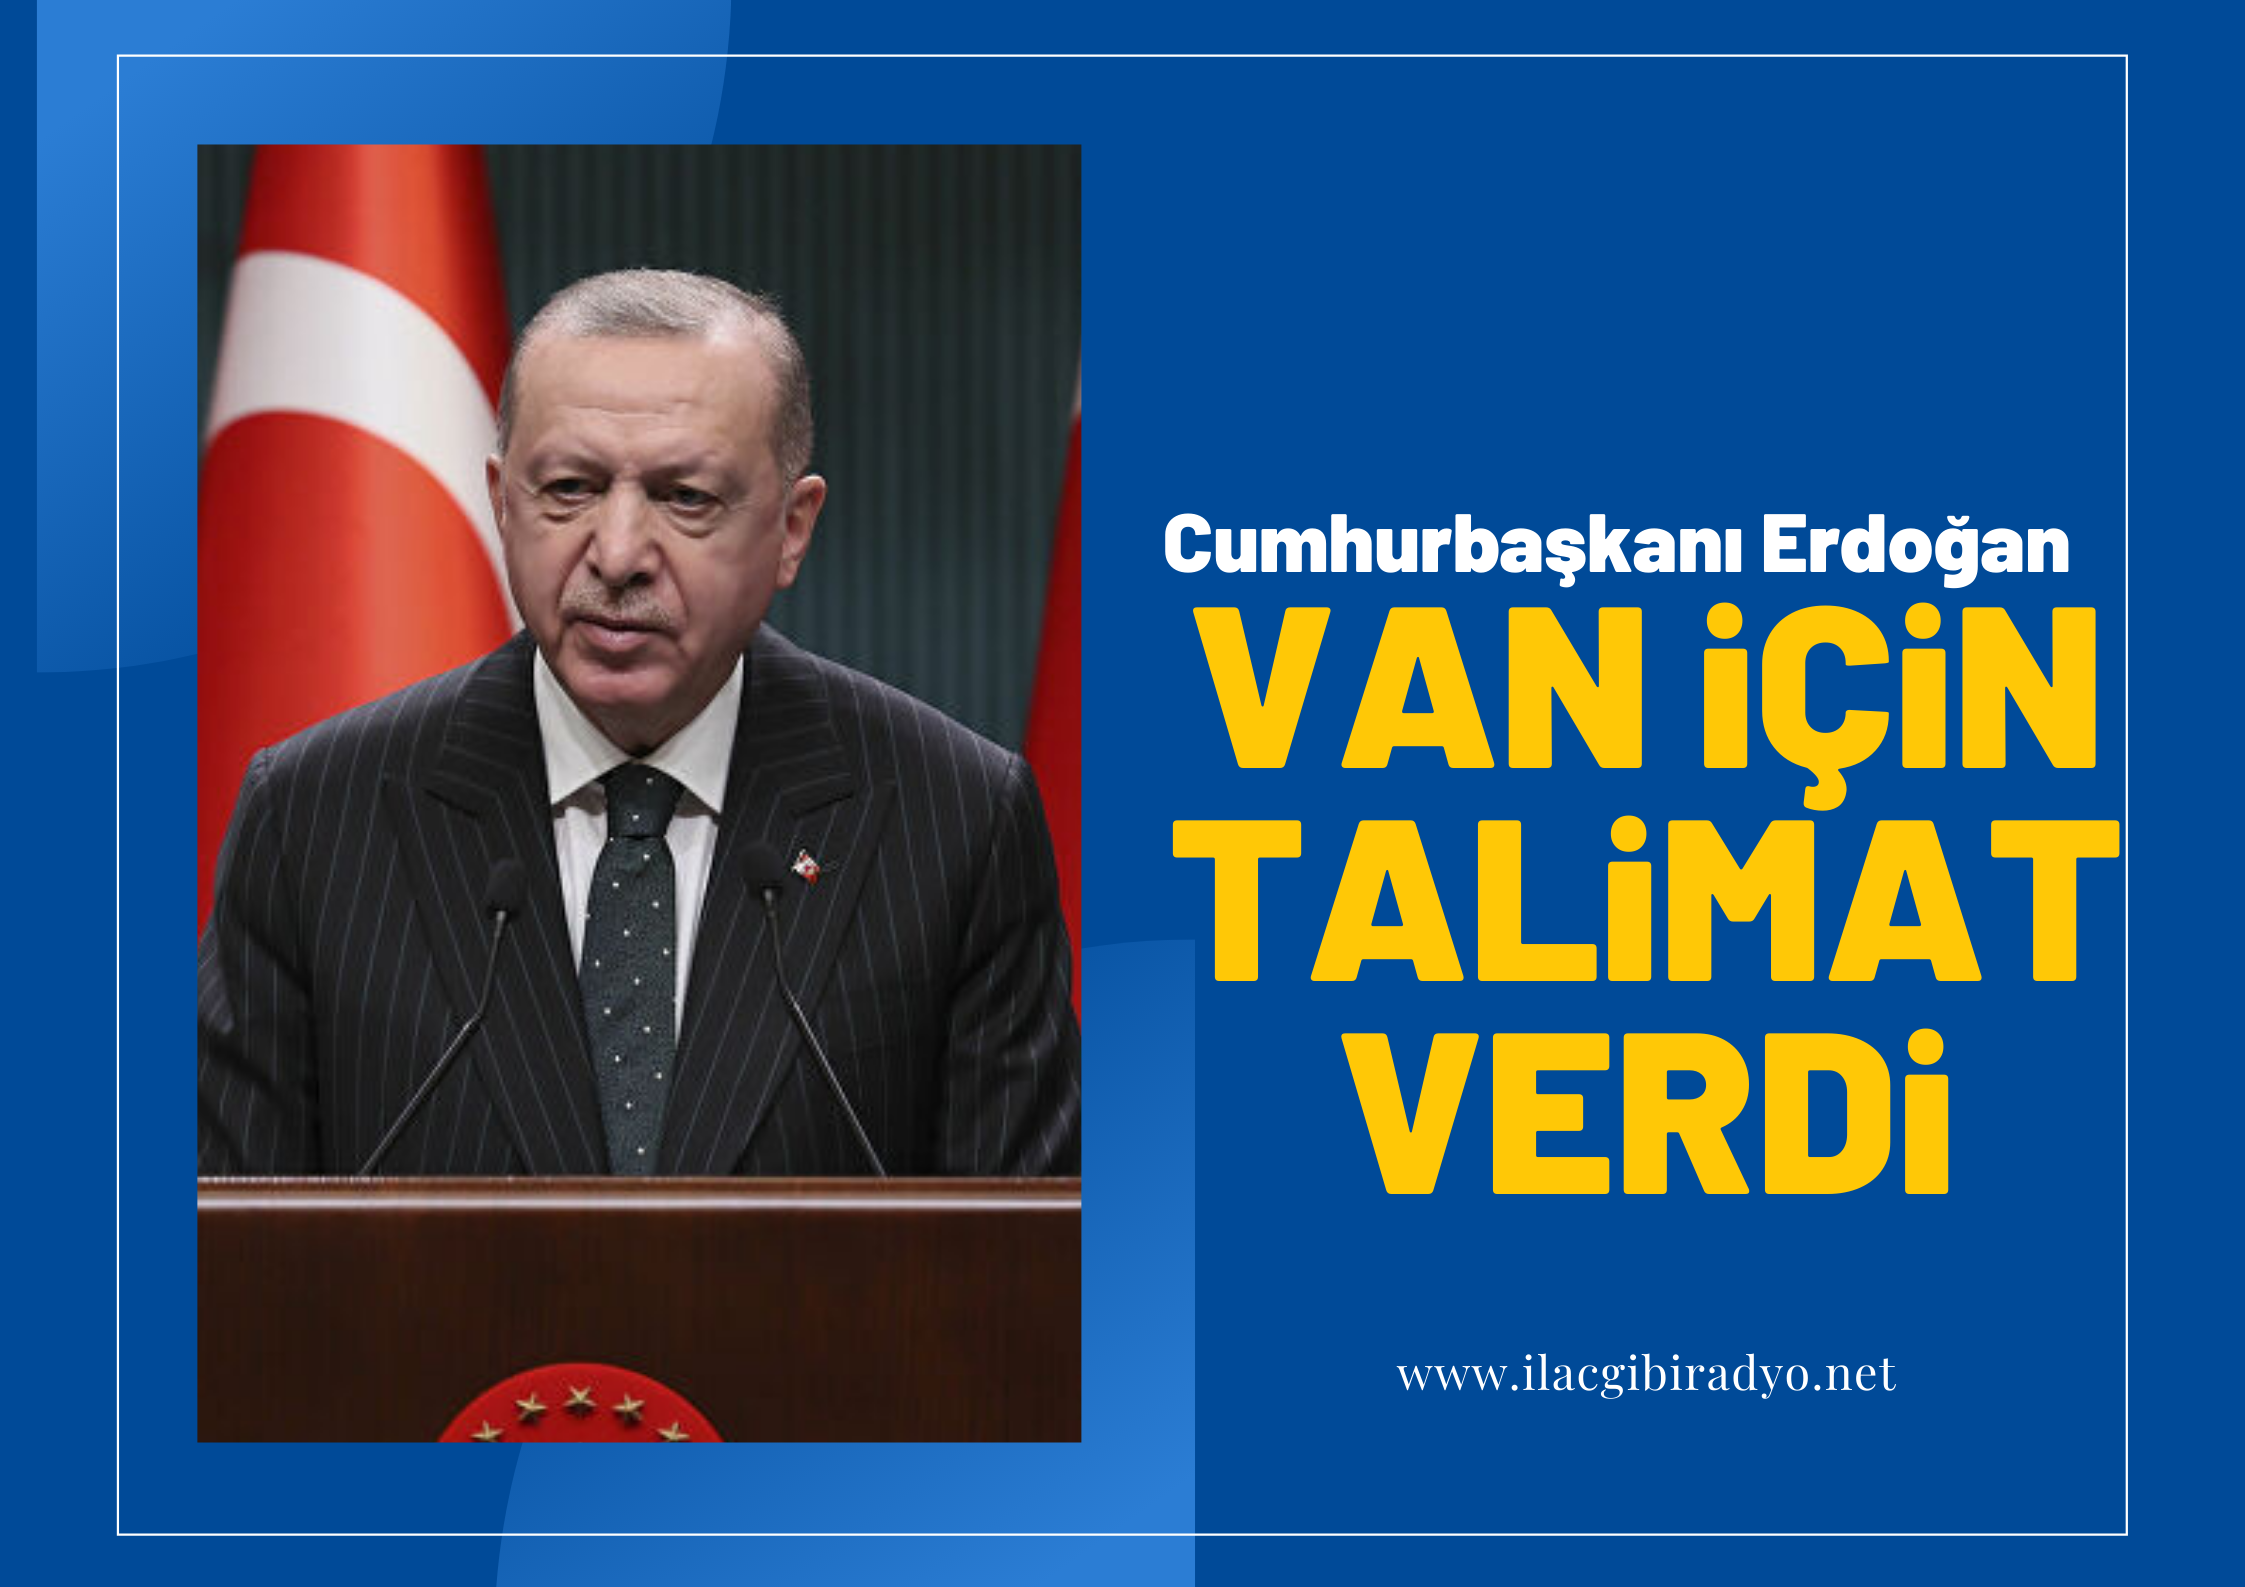 Erdoğan, Van için talimat verdi!